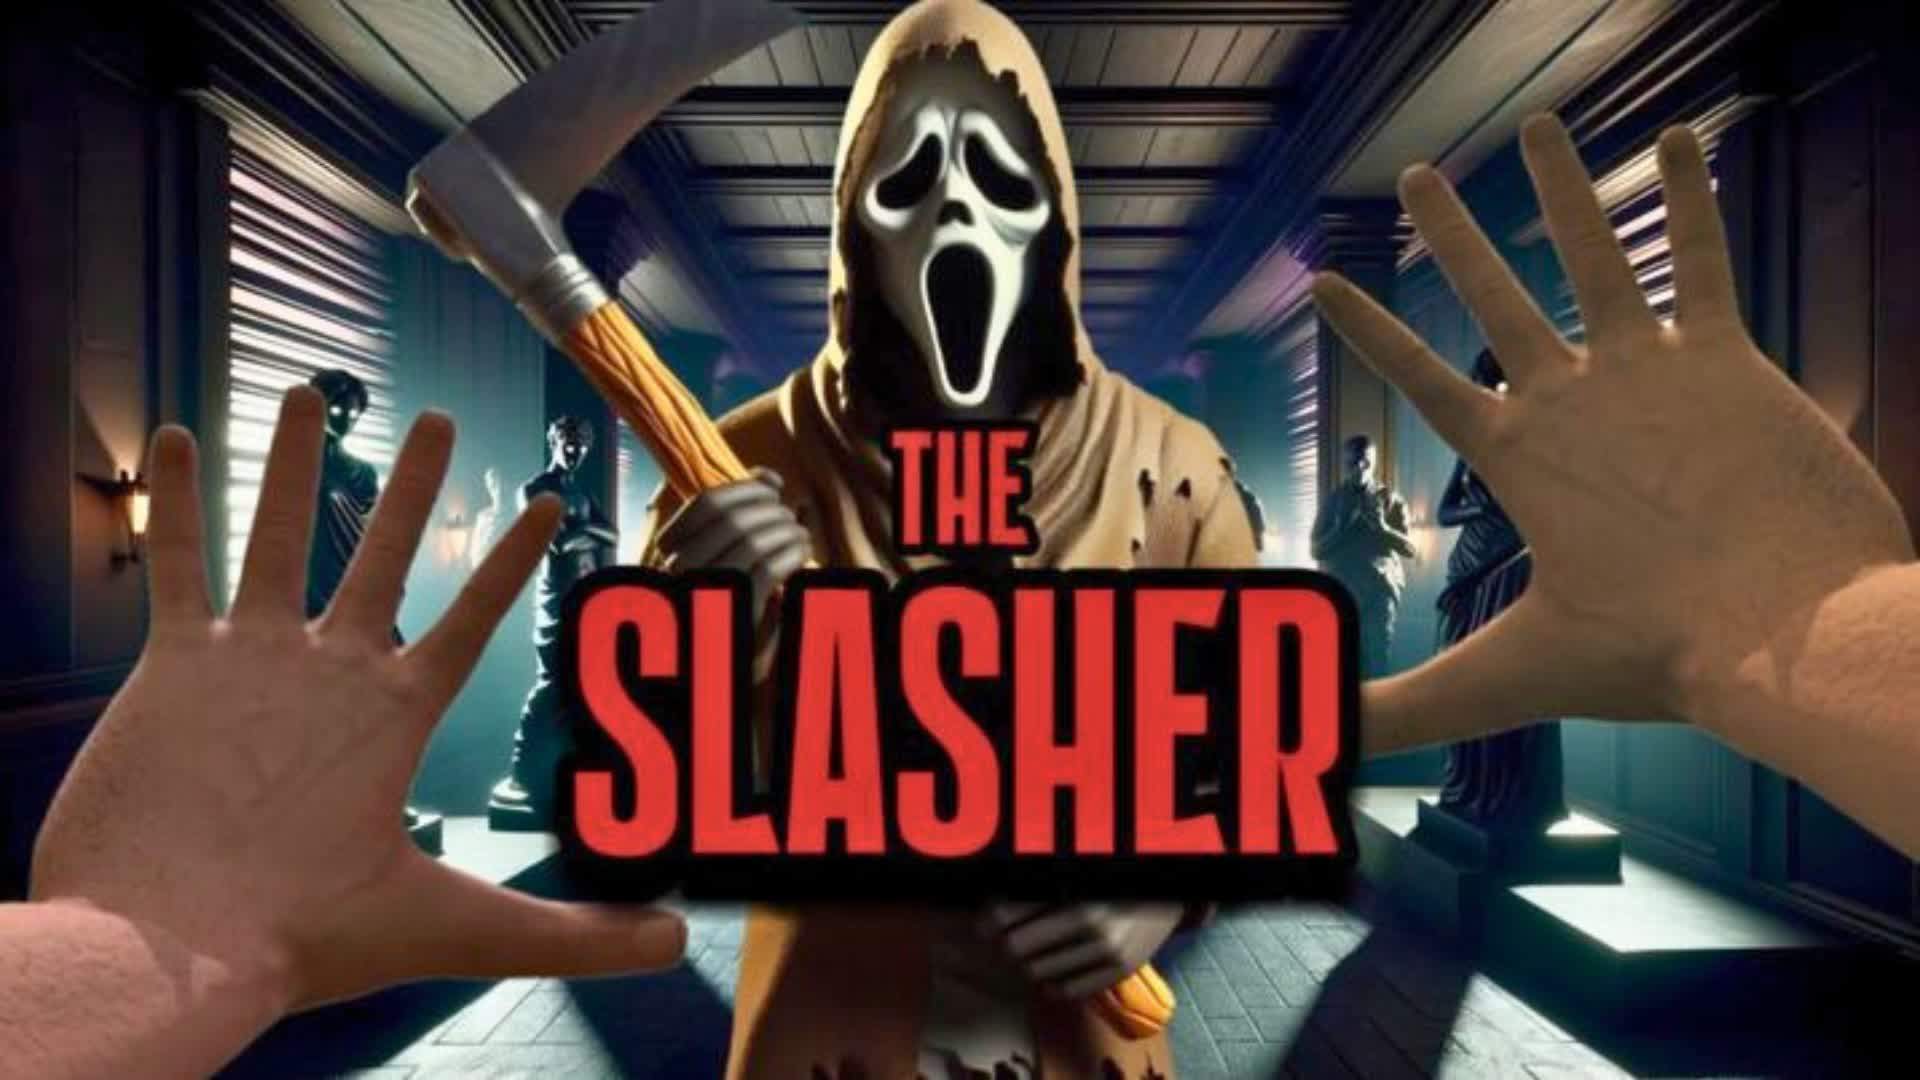 THE SLASHER